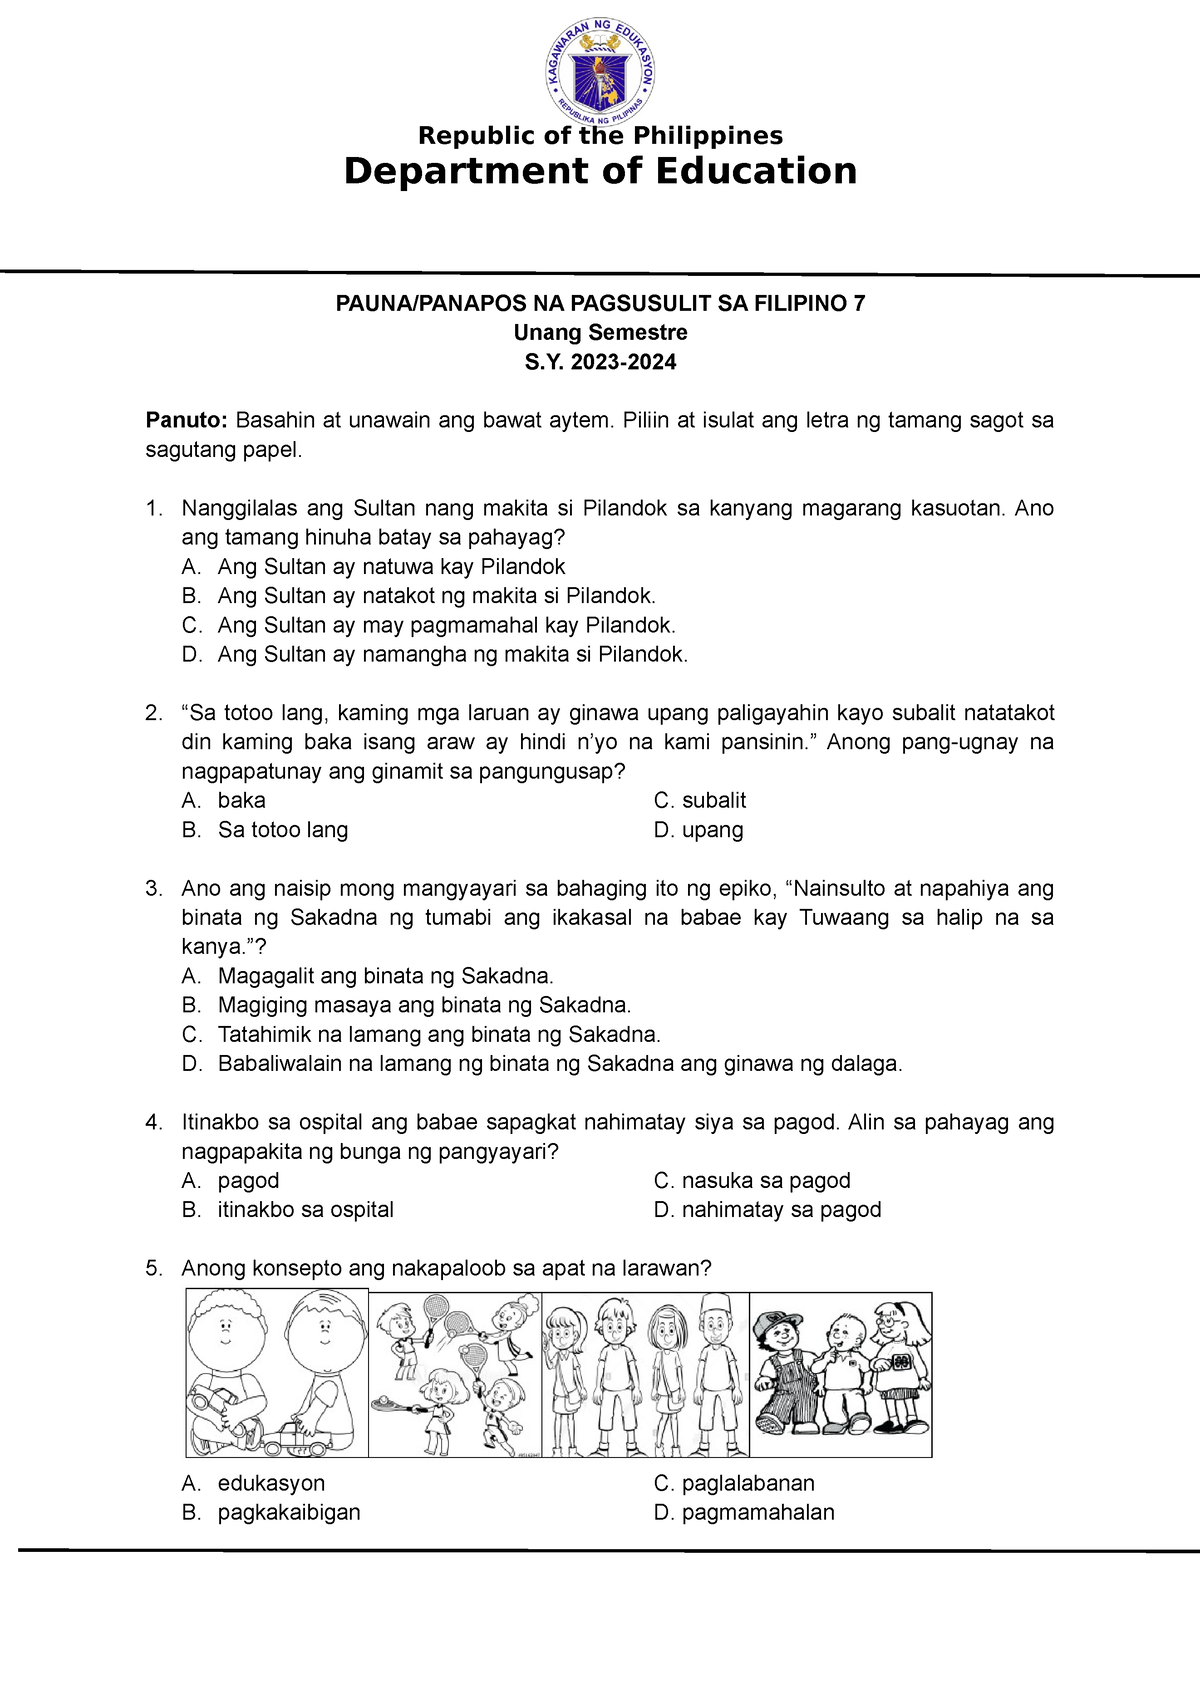 Pre Post Test Filipino 7 Q1q2 Department Of Education Paunapanapos Na Pagsusulit Sa Filipino 9480